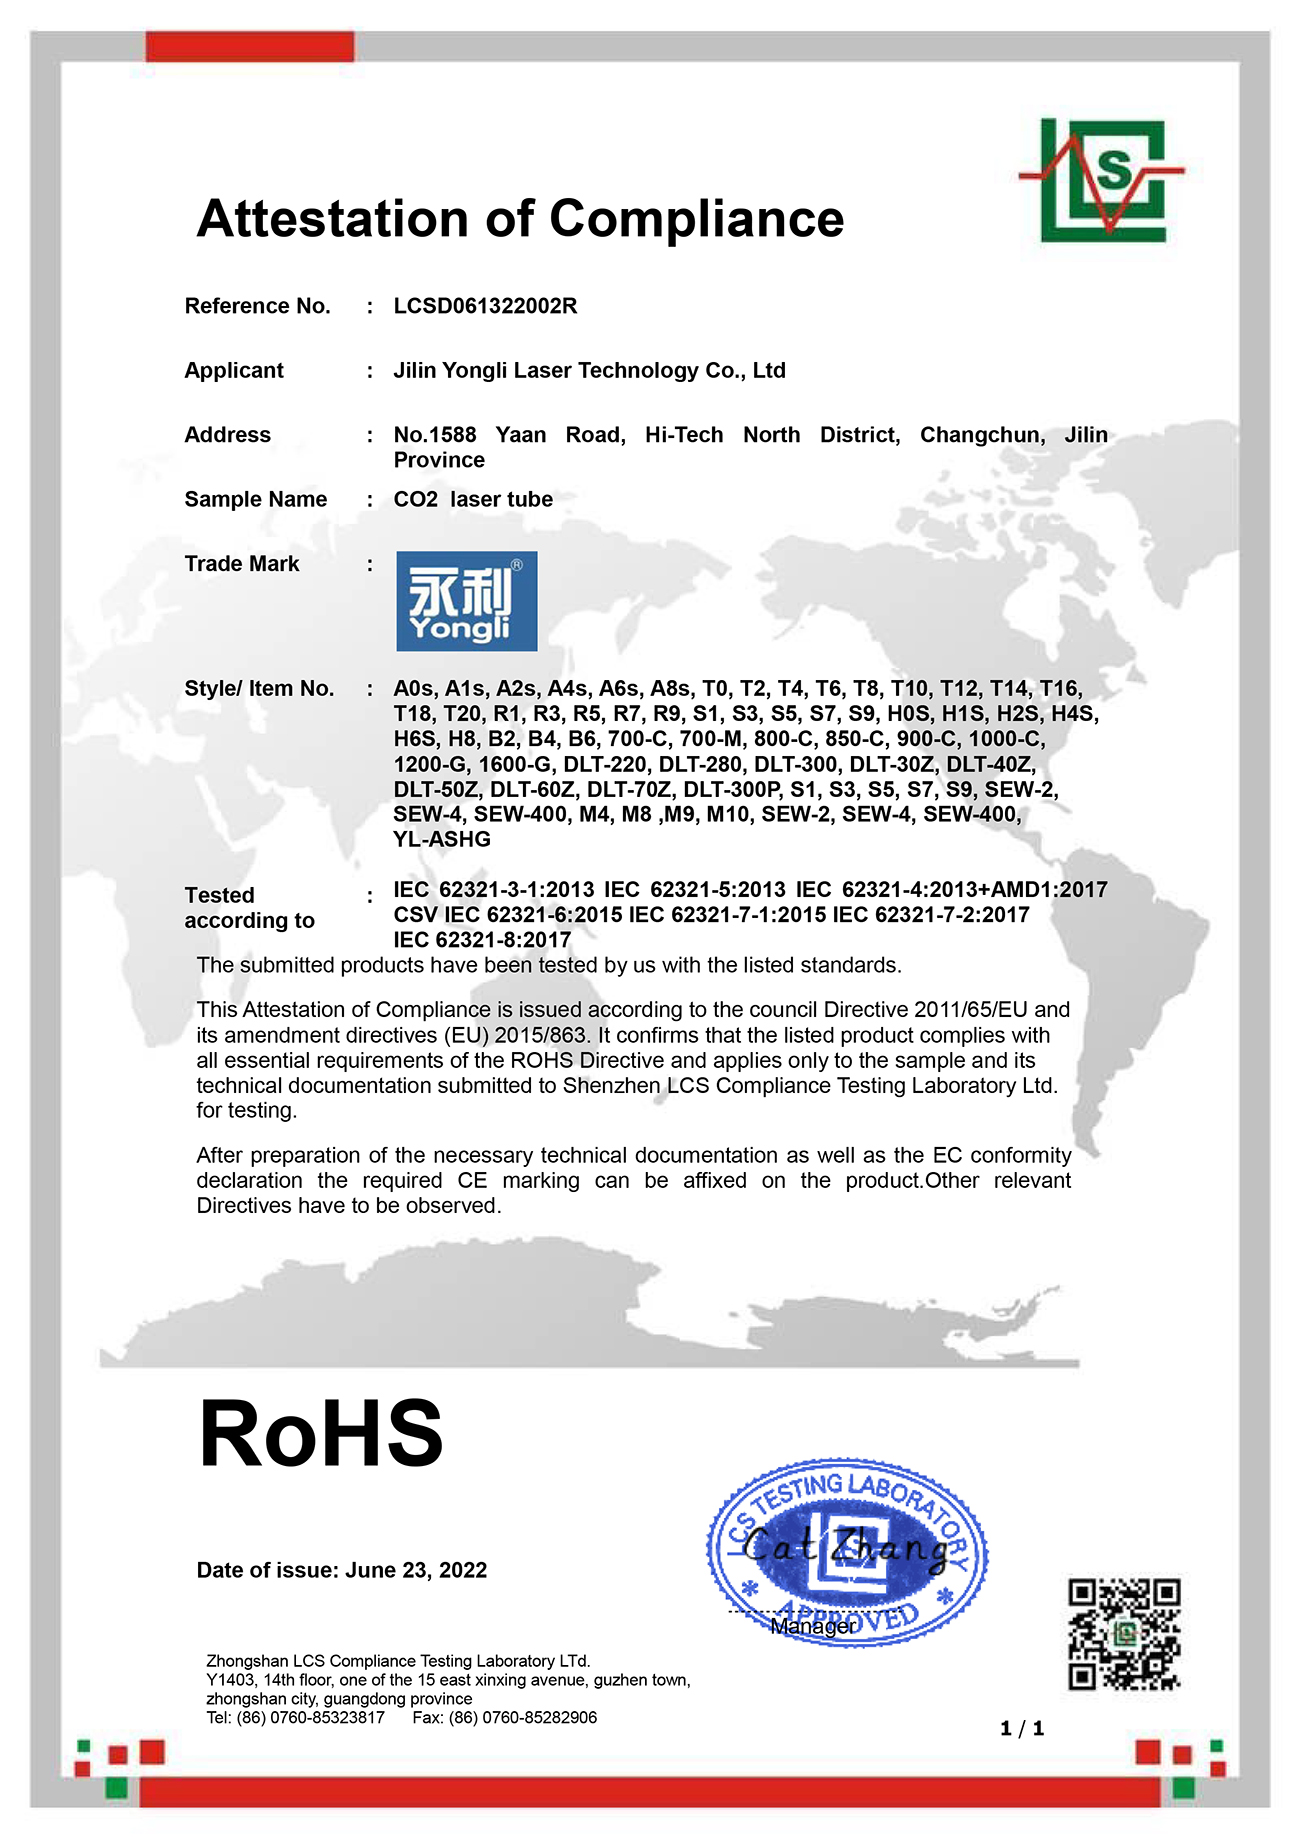 二氧化碳激光器 红光指示 ROHS-证书.jpg